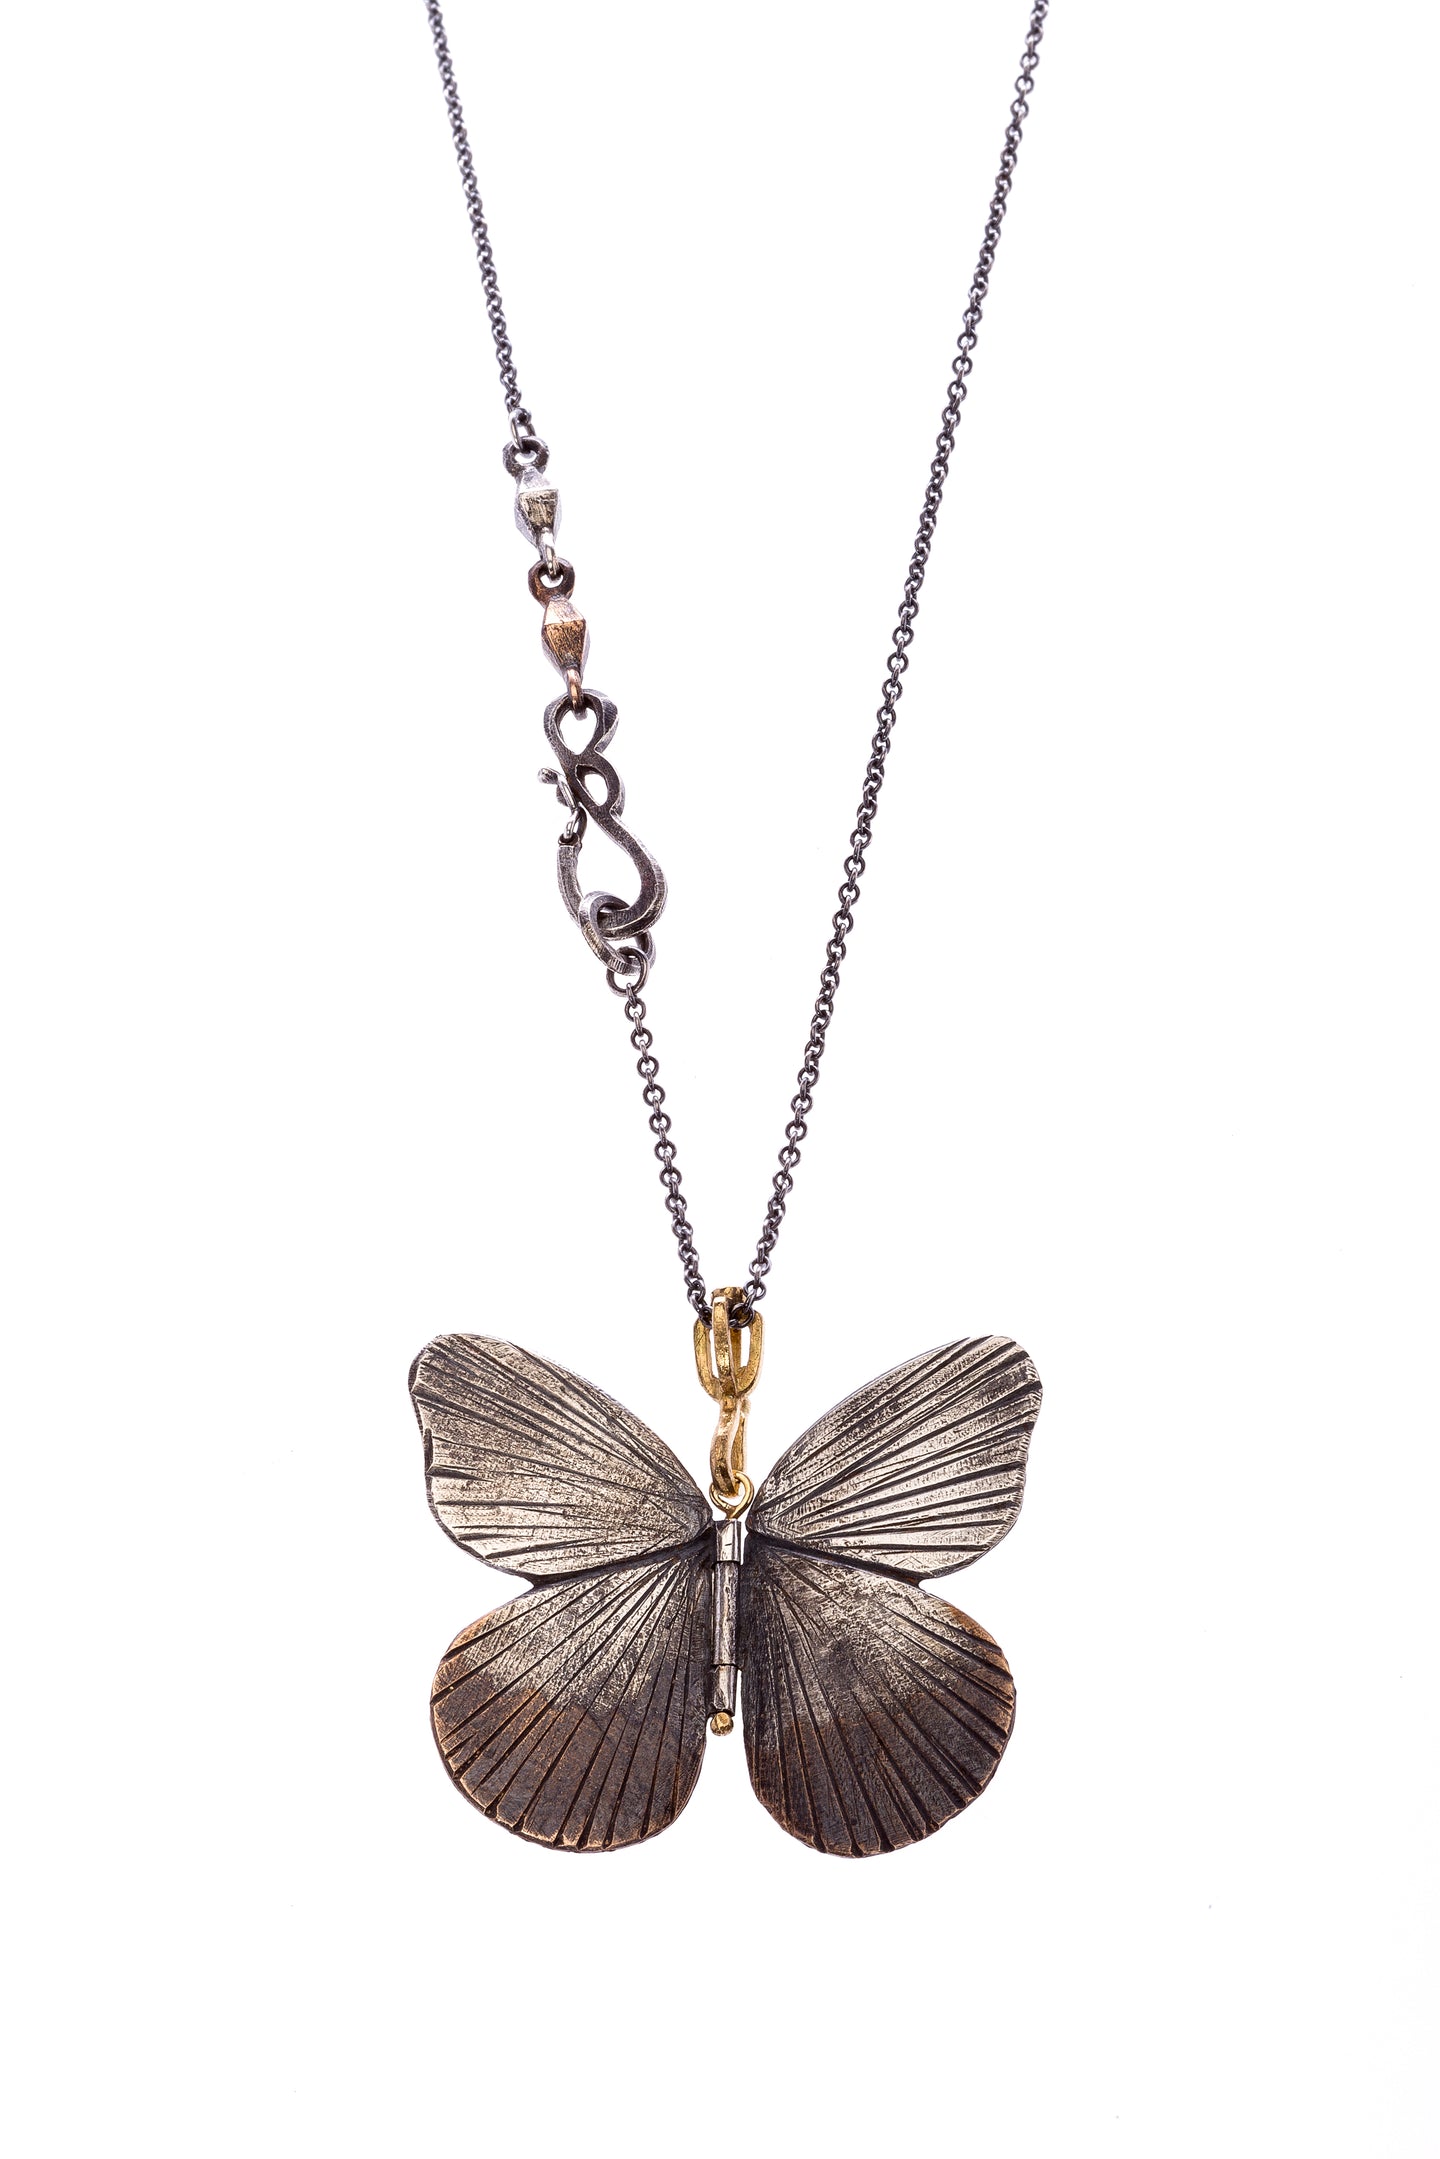 Asterope Butterfly Pendant | Art + Soul Gallery